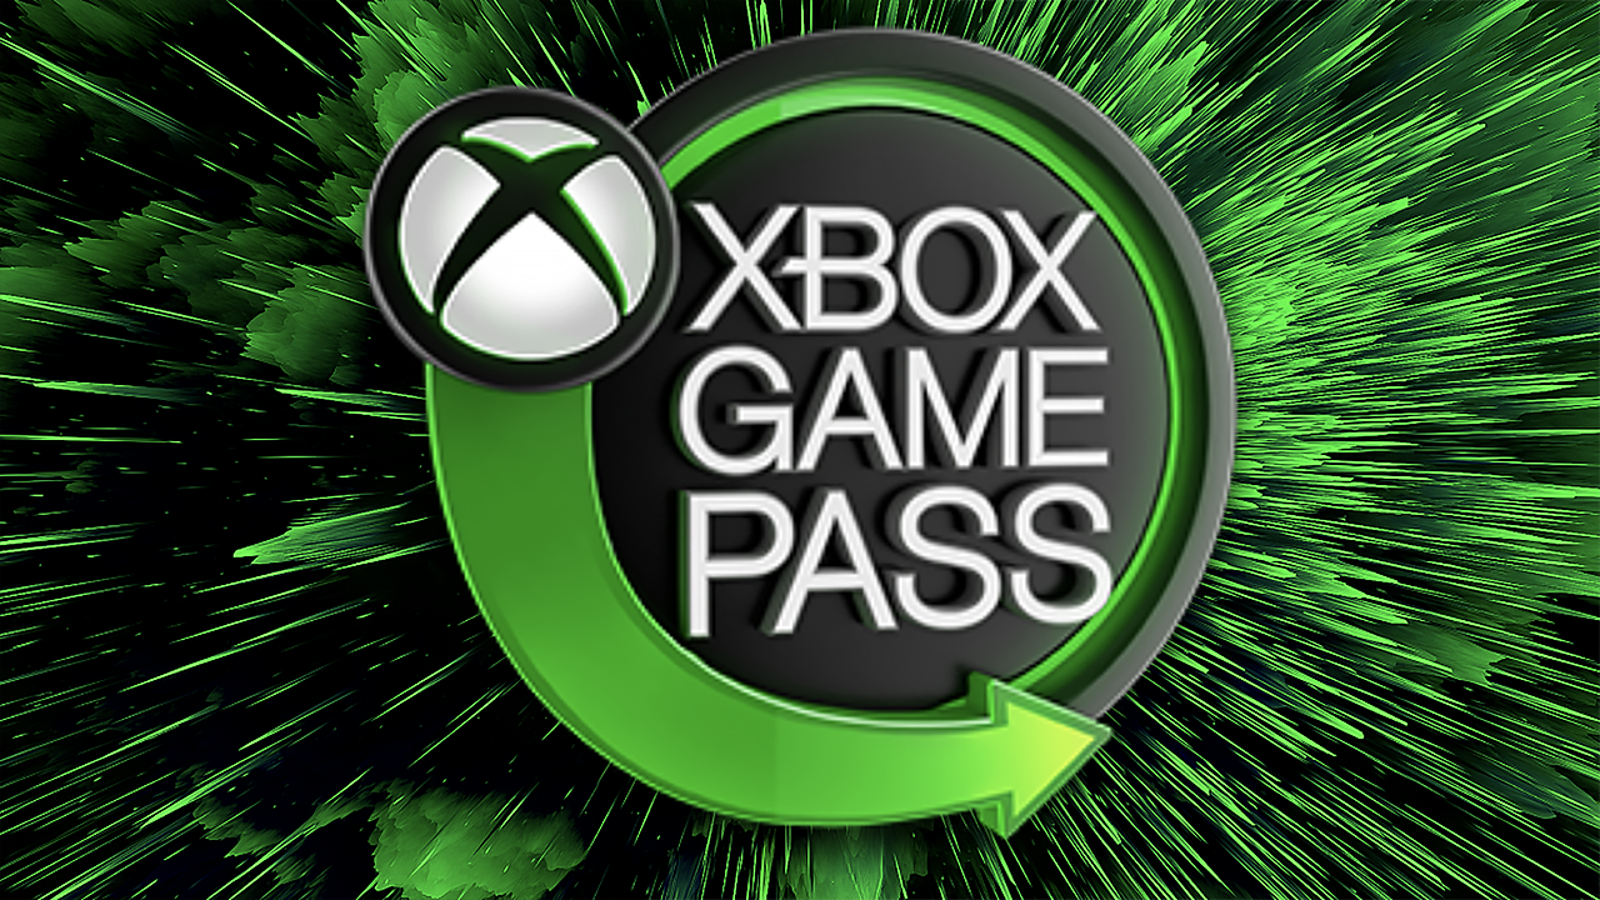 Plano Familiar do Xbox Game Pass poderá chegar em breve a mais territórios